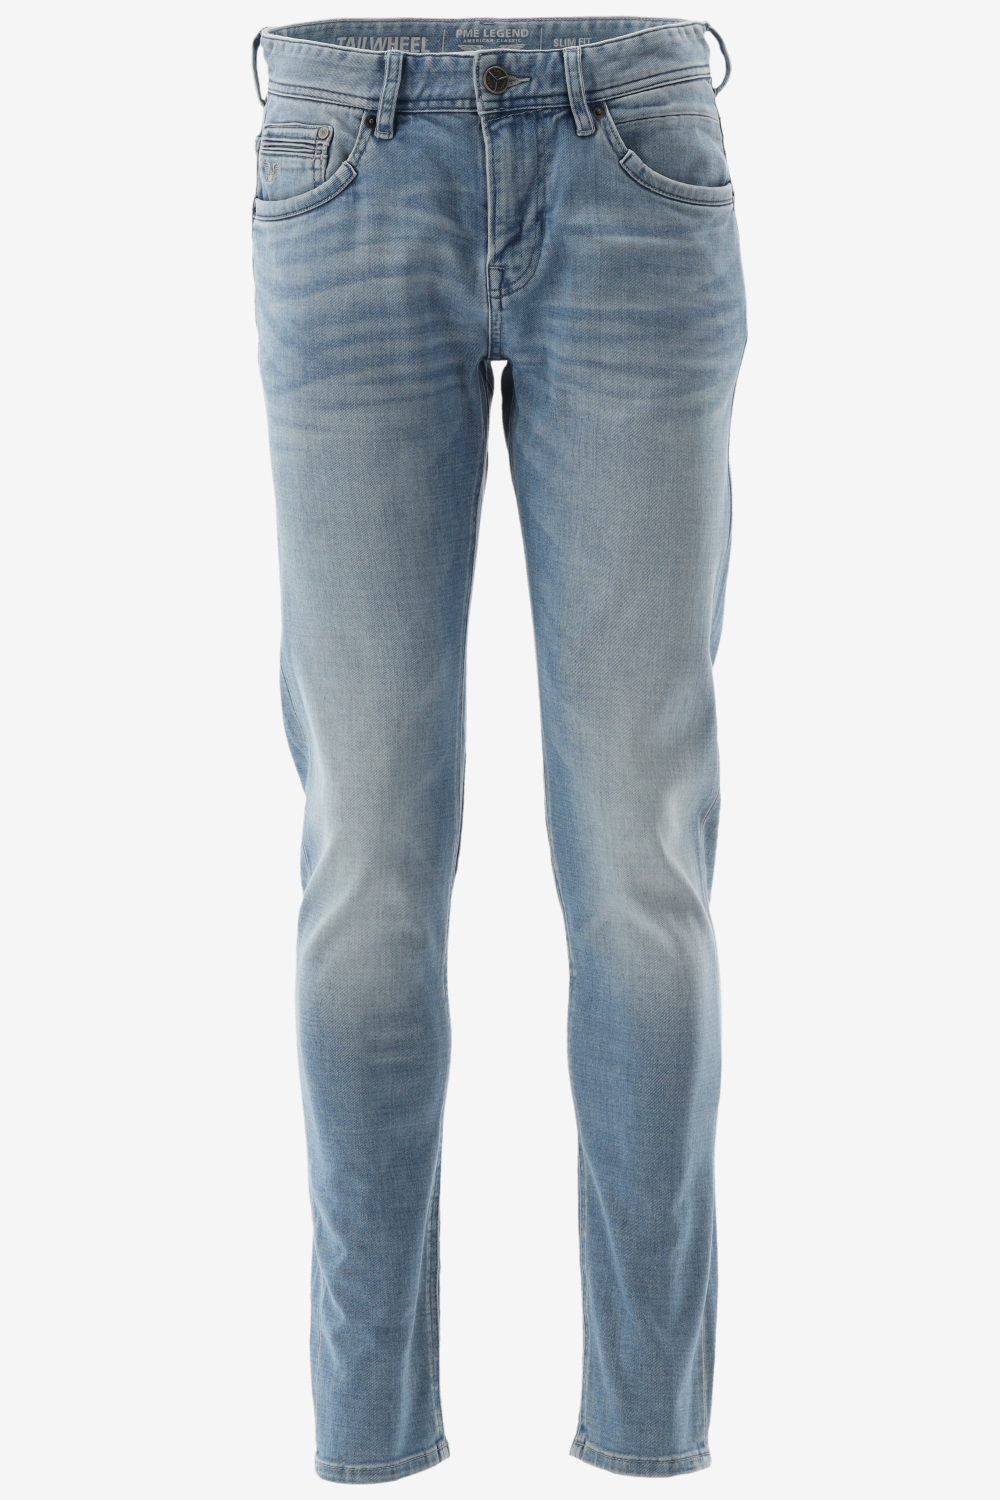 Webshop GRATIS Pme Fit TAILWEEL Jeans Fashion Bergmans - - | Legend Slim VERZENDING! Herenkleding Outlet